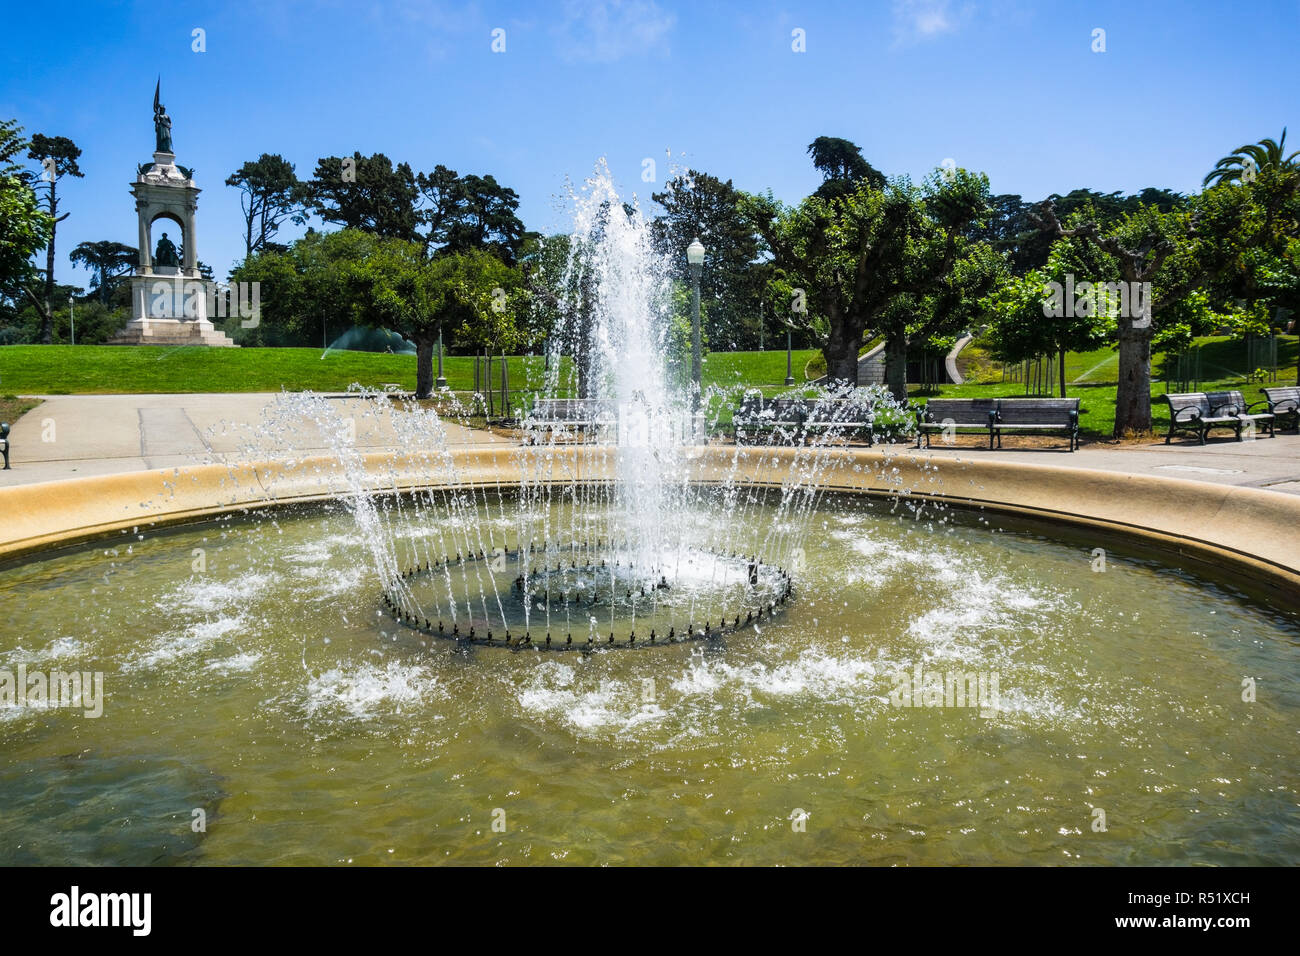 Fontaine à eau dans le parc du Golden Gate, San Francisco, Californie Banque D'Images